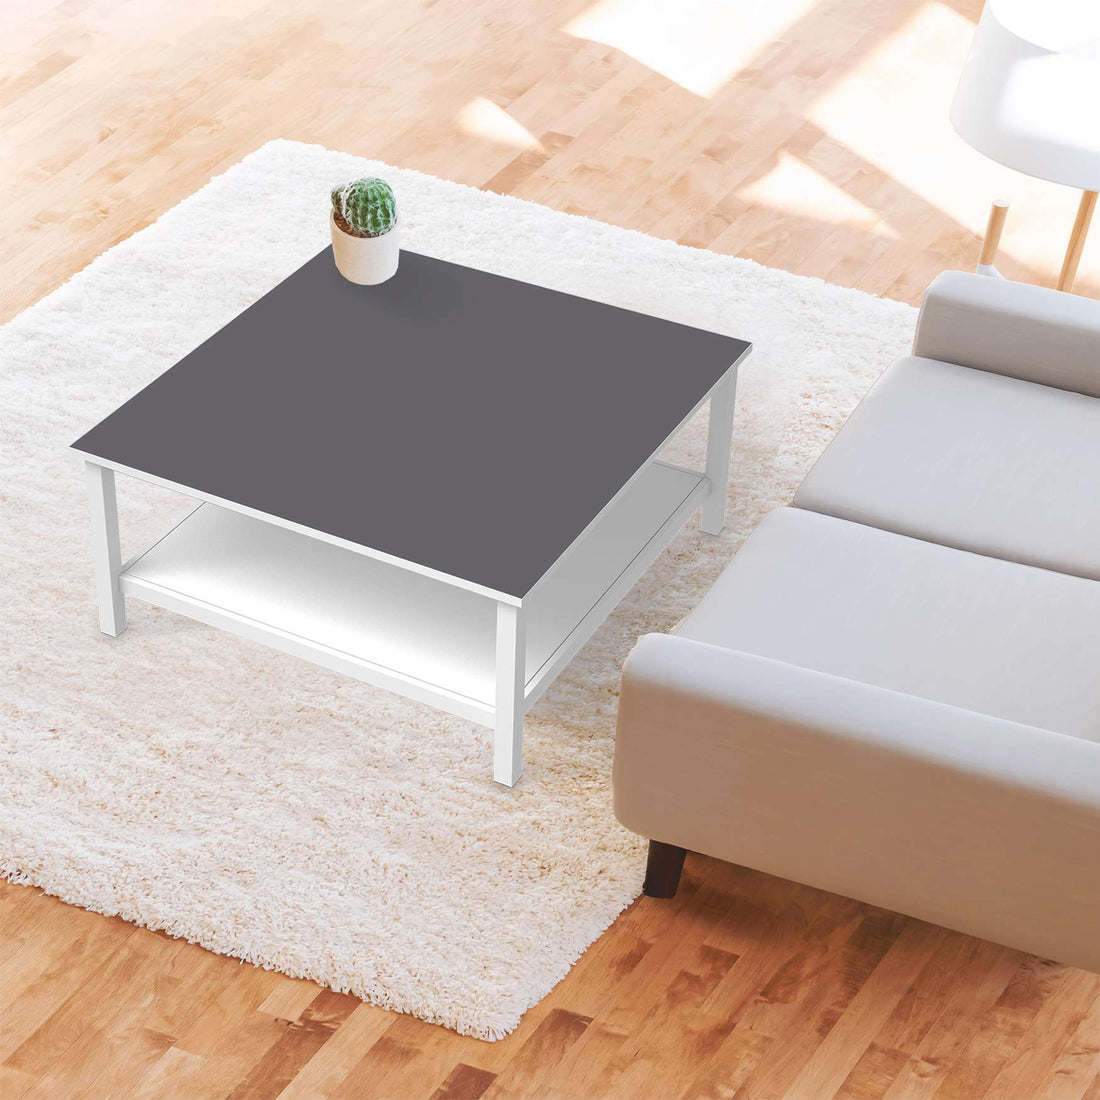 Klebefolie für Möbel Grau Light - IKEA Hemnes Couchtisch 90x90 cm - Wohnzimmer